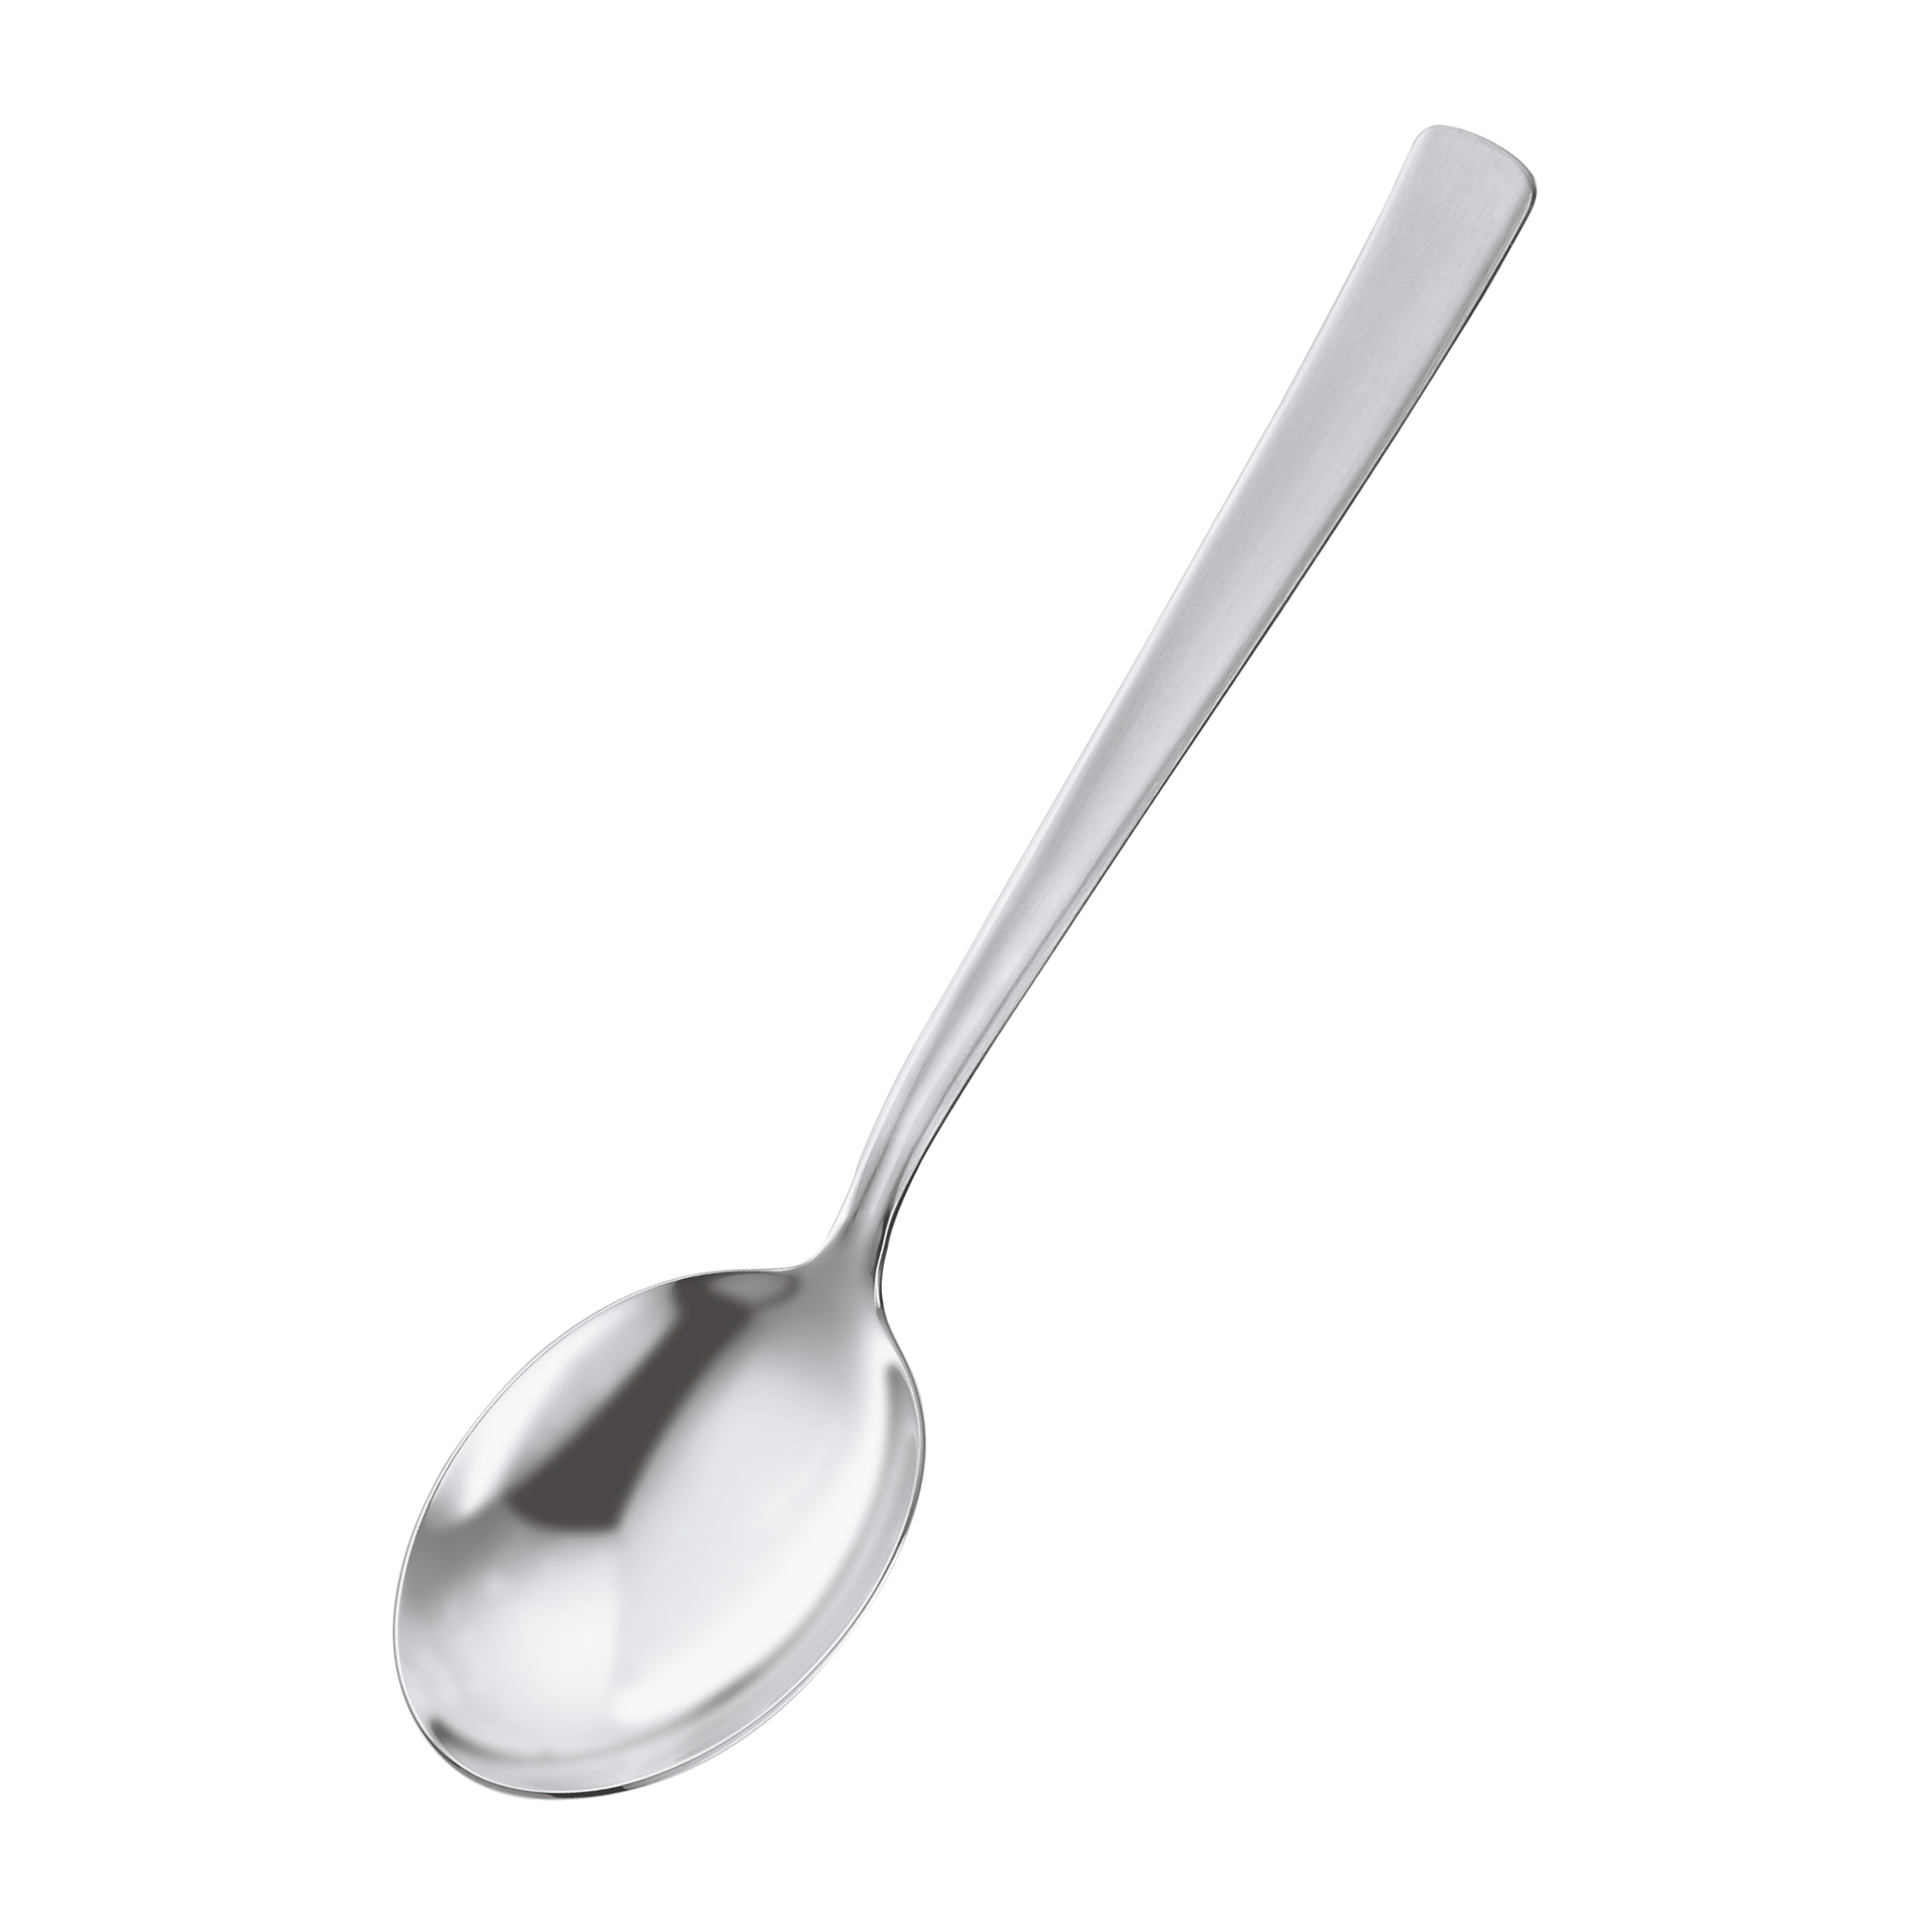 Vegetable Spoon VS 600 